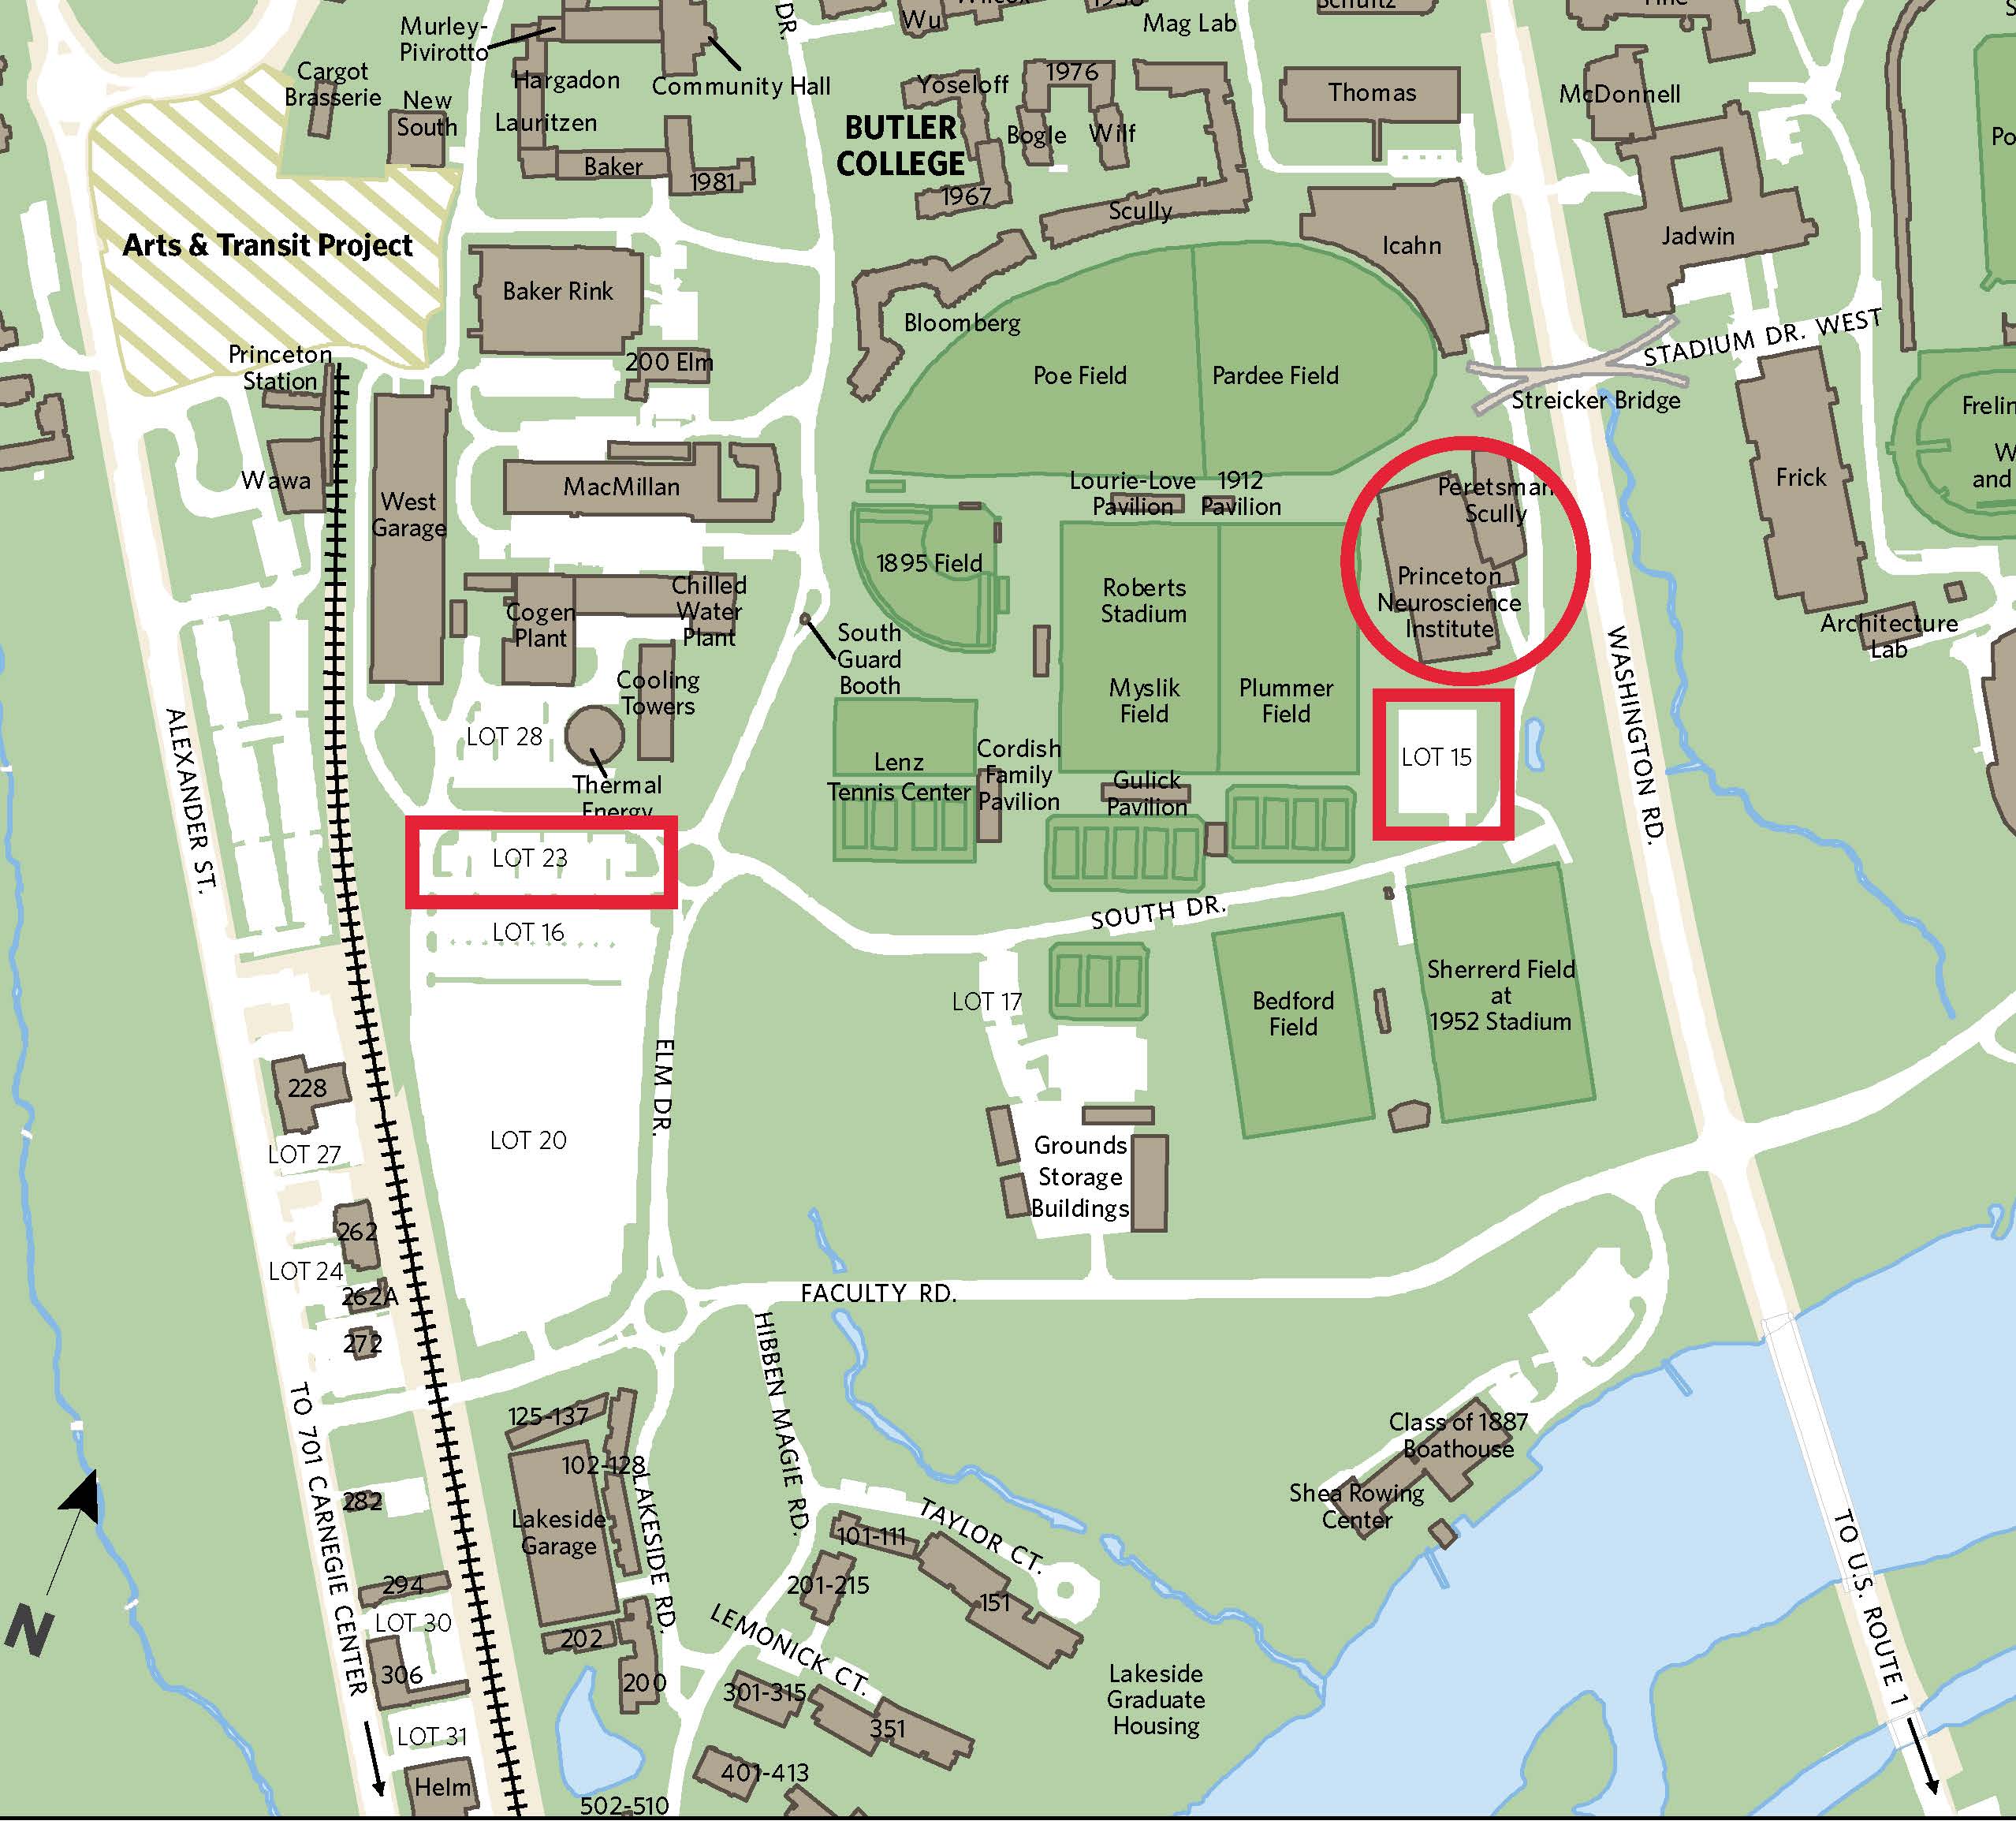 UPLB Campus Map